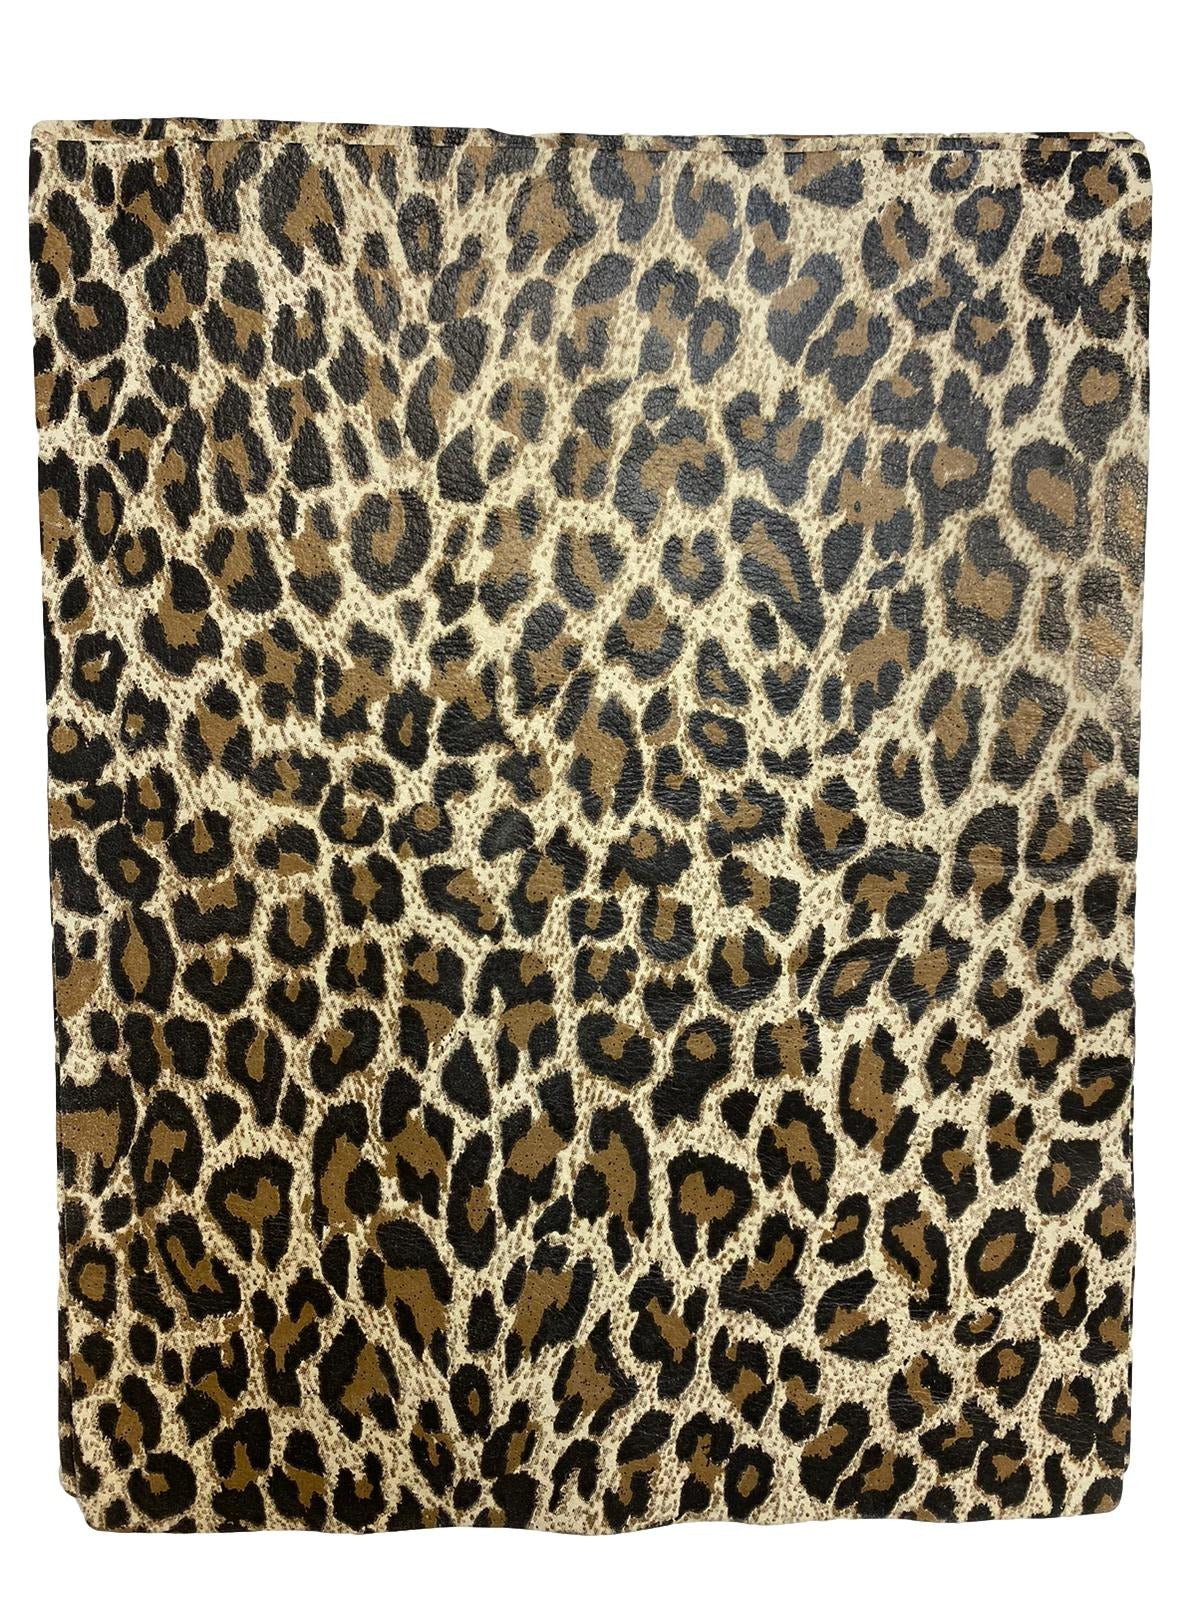 Beige Leopard Cowhide Leather: 8.5" x 11" Pre-Cut Pieces